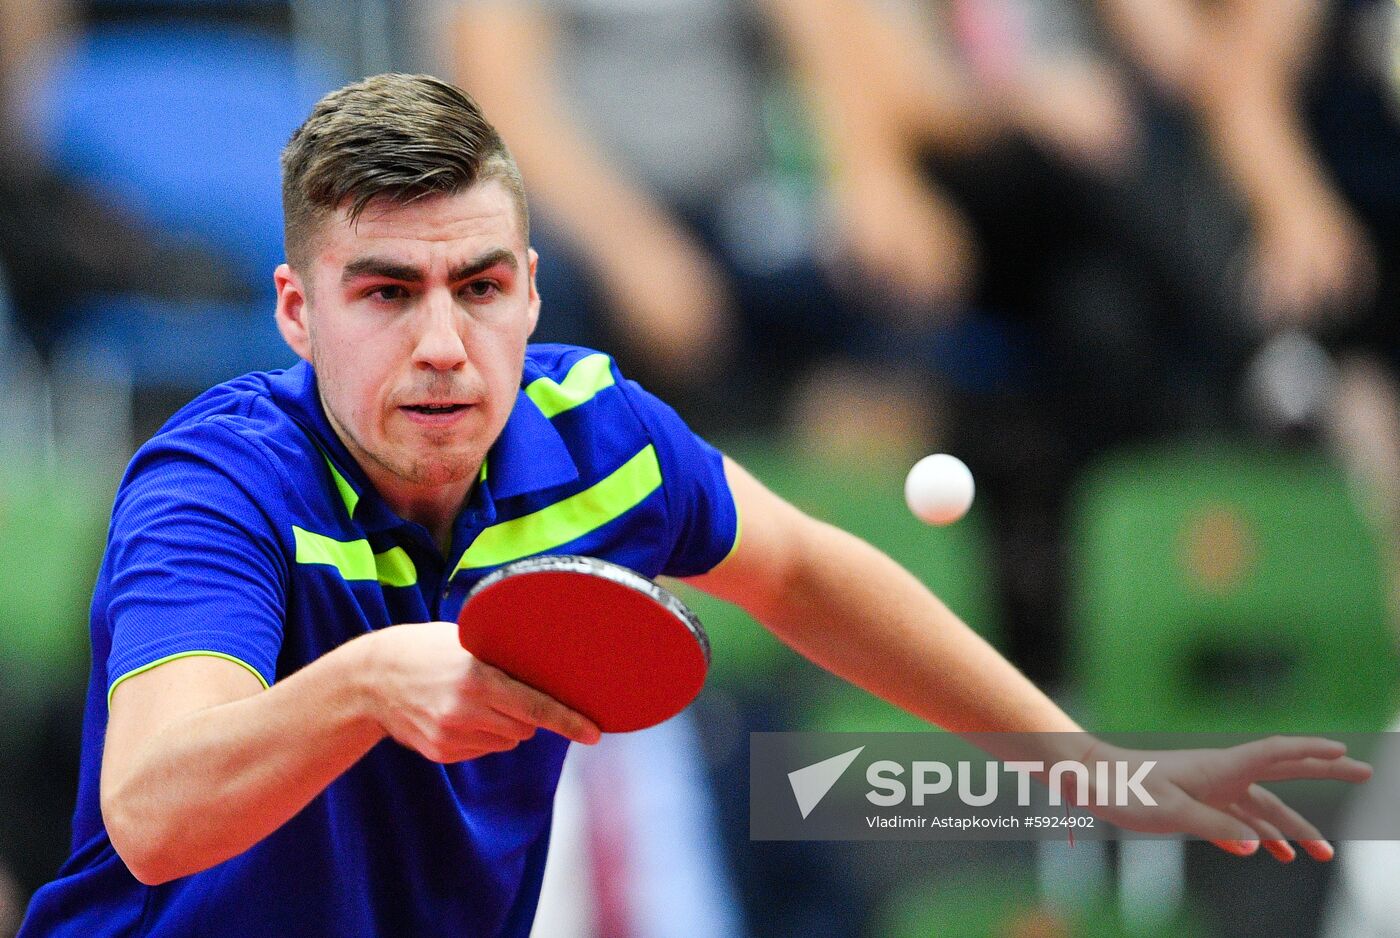 Belarus European Games Table Tennis